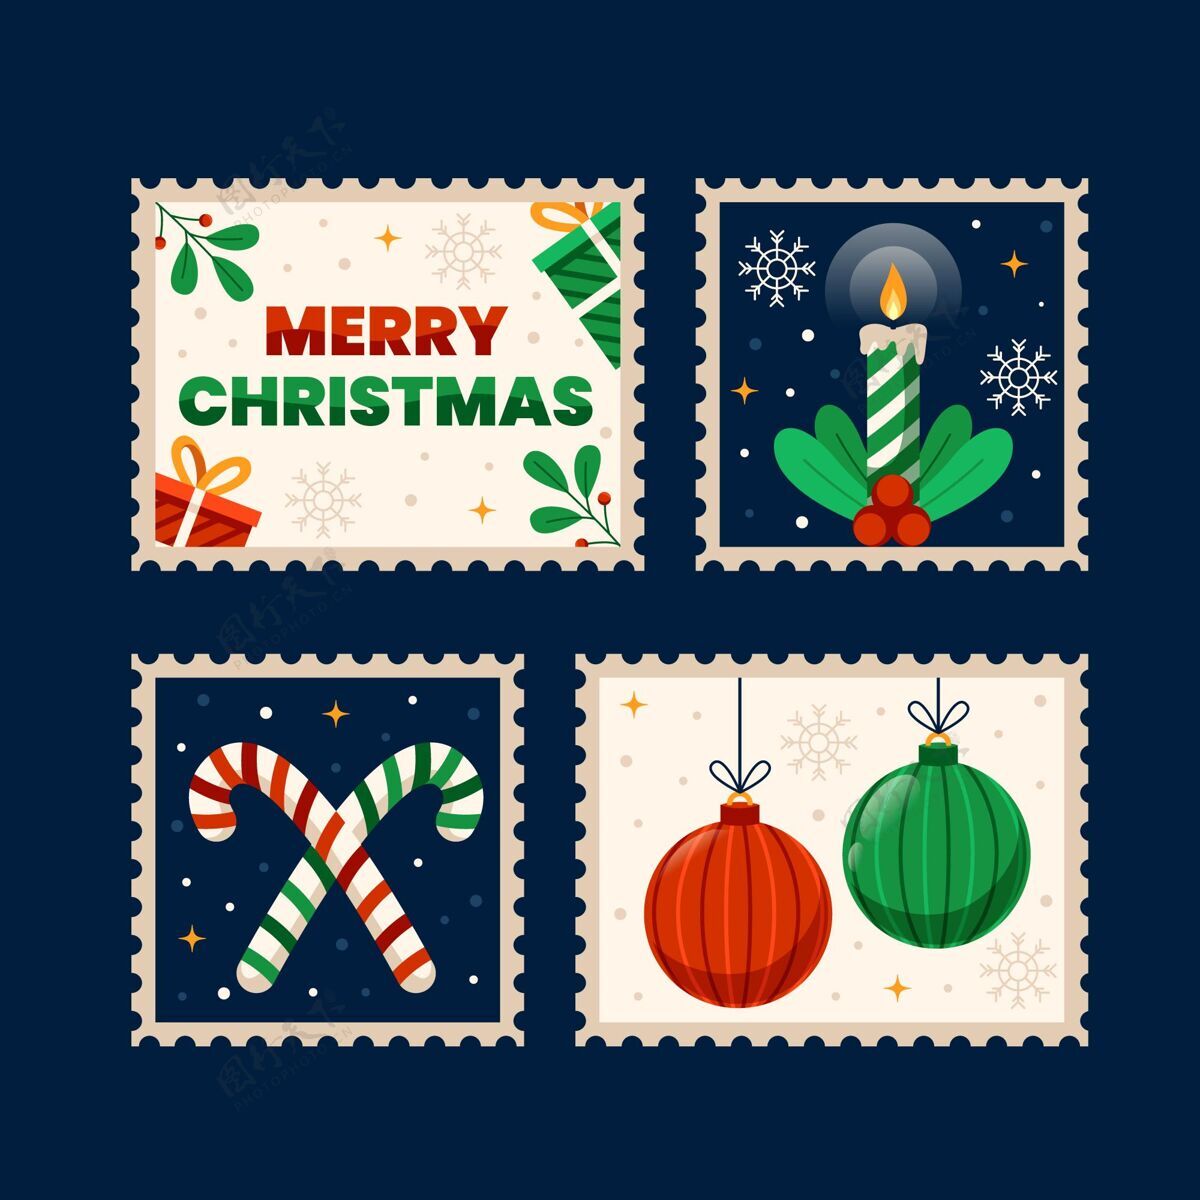 事件平面设计圣诞集邮平面欢乐设计